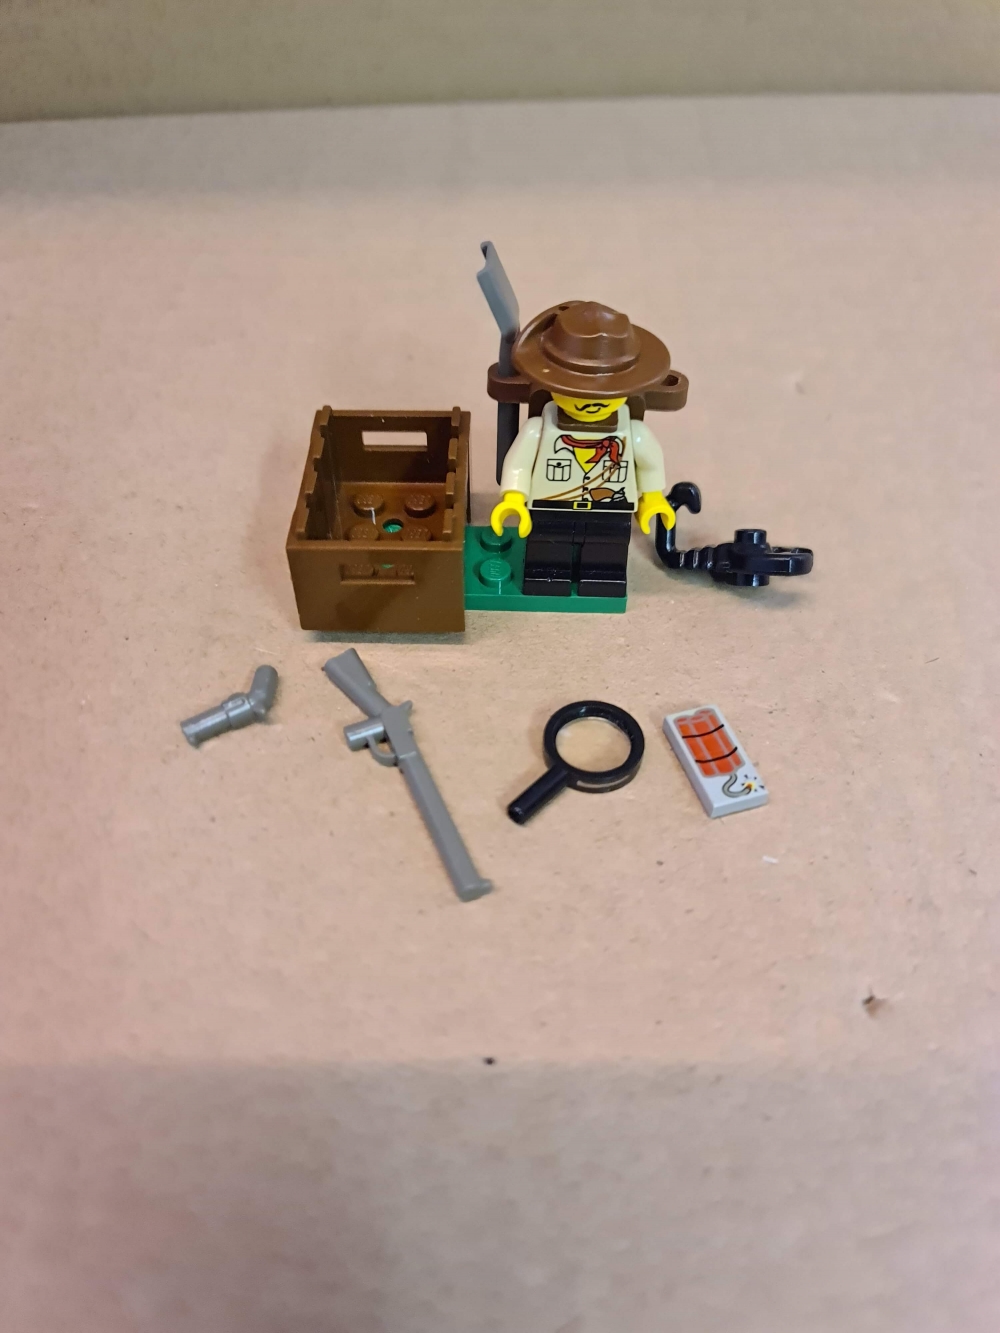 Sett 1094 fra Lego Adventurers : Desert serien.
Meget pent.
Komplett uten manual.